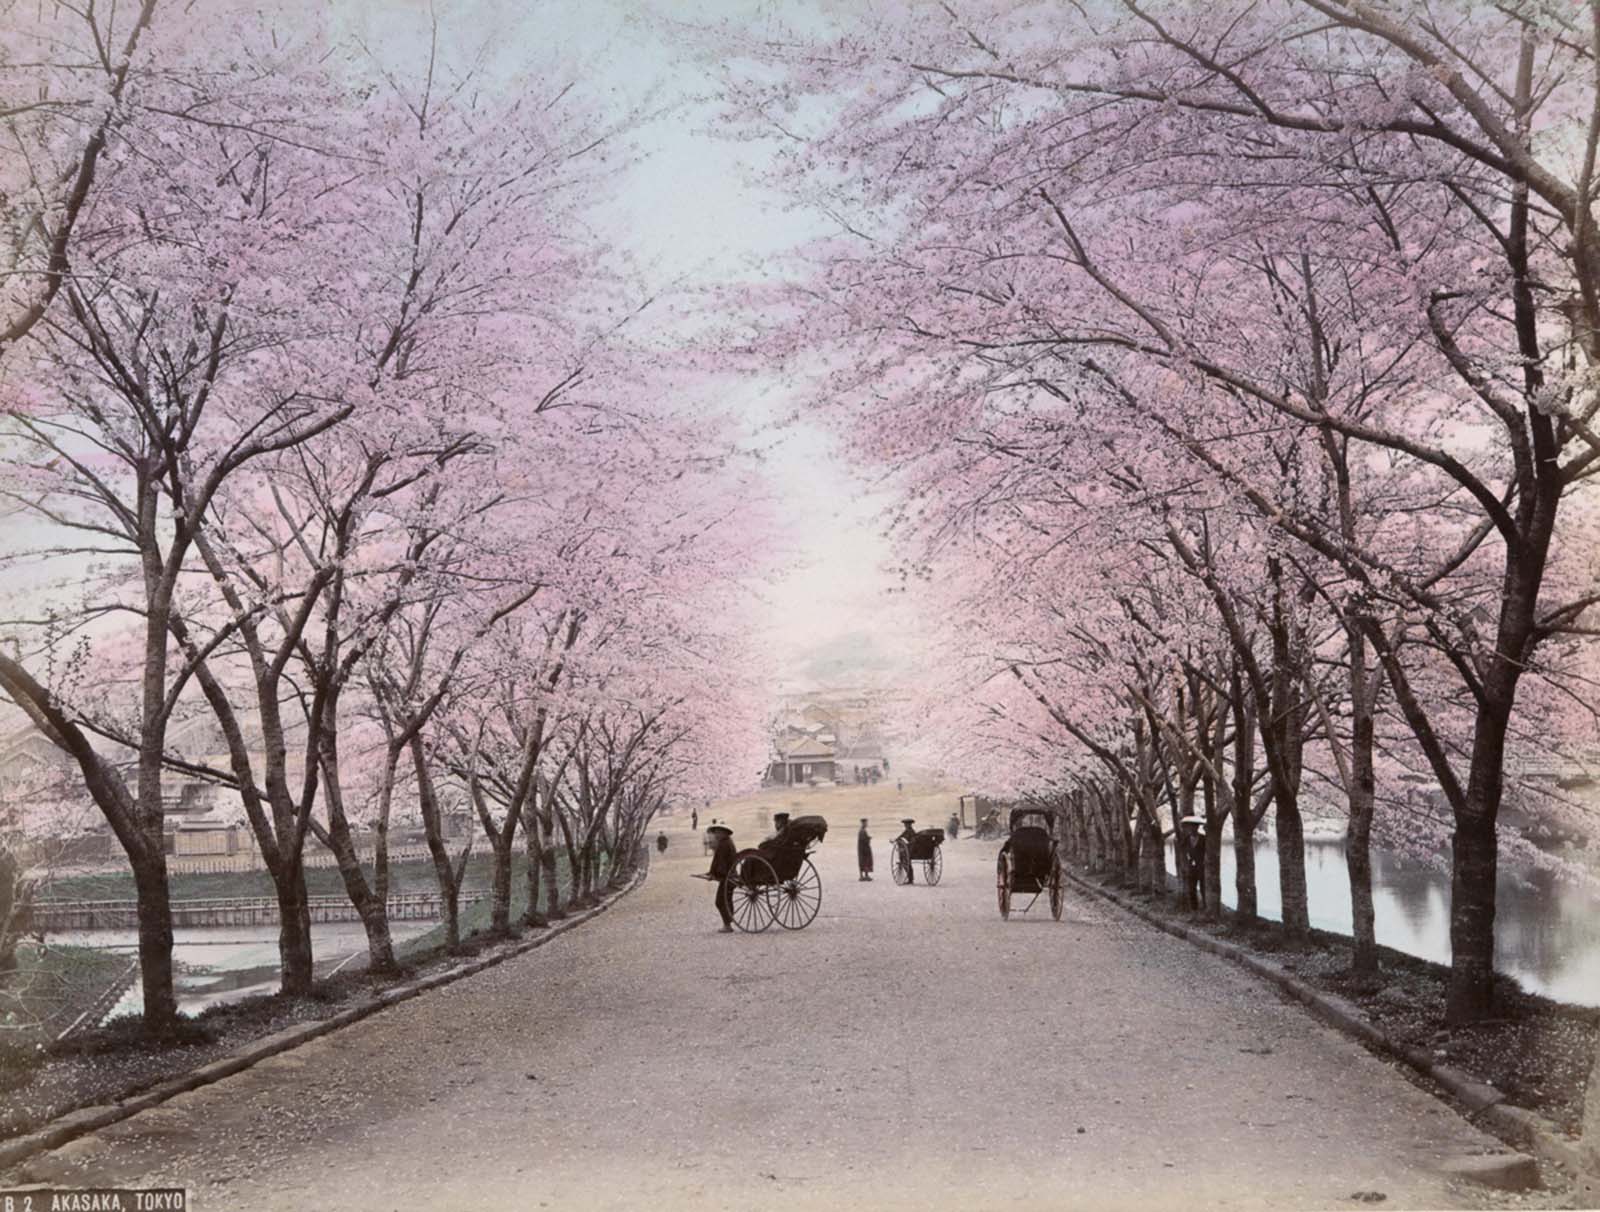 Rares photos colorées à la main de la vie quotidienne à Meiji au Japon, 1890